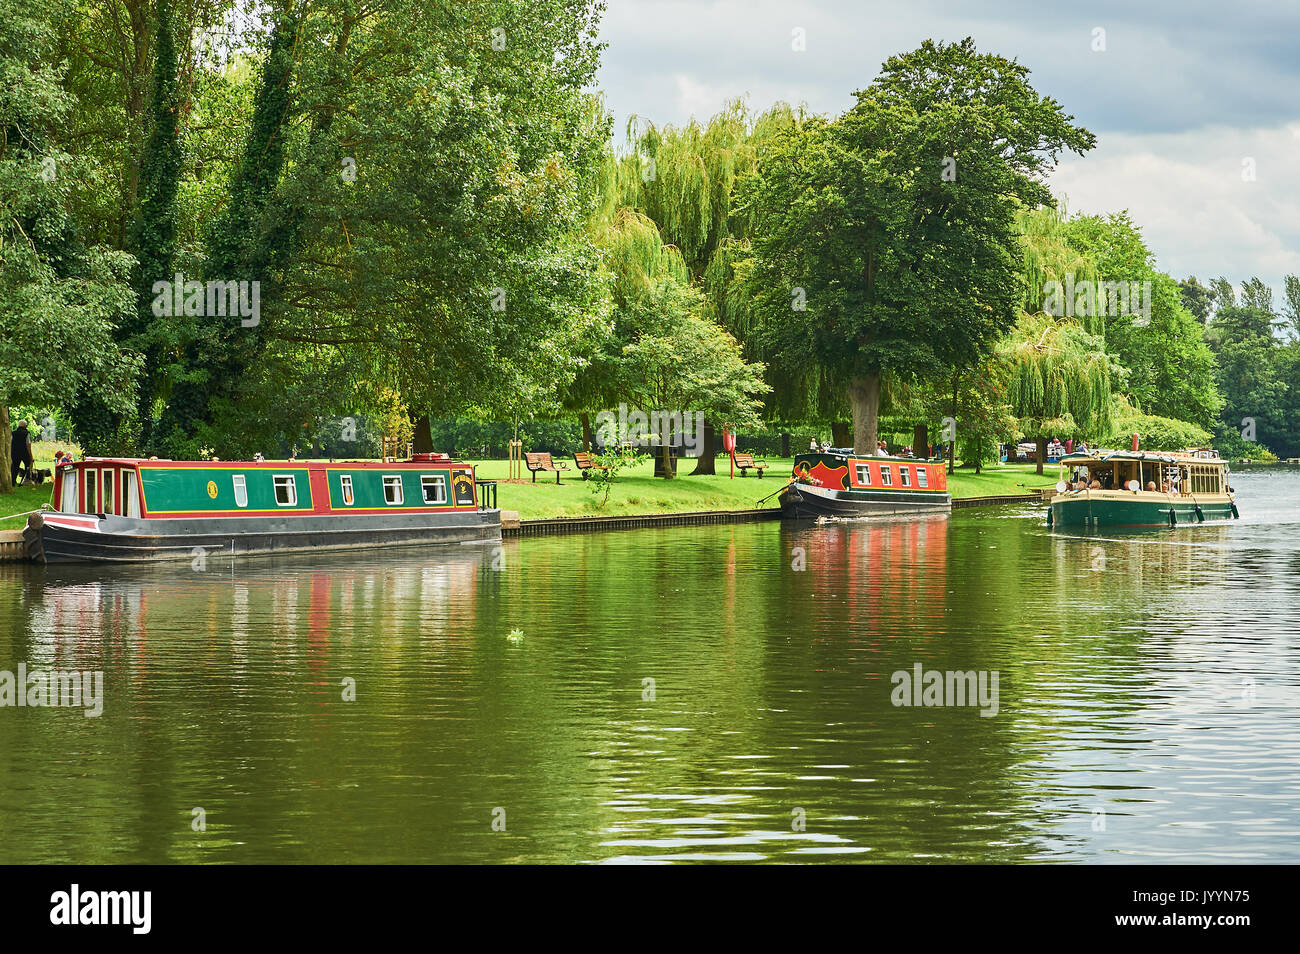 Bateaux de plaisance touristique sur la rivière Avon à Stratford upon Avon, Warwickshire Banque D'Images